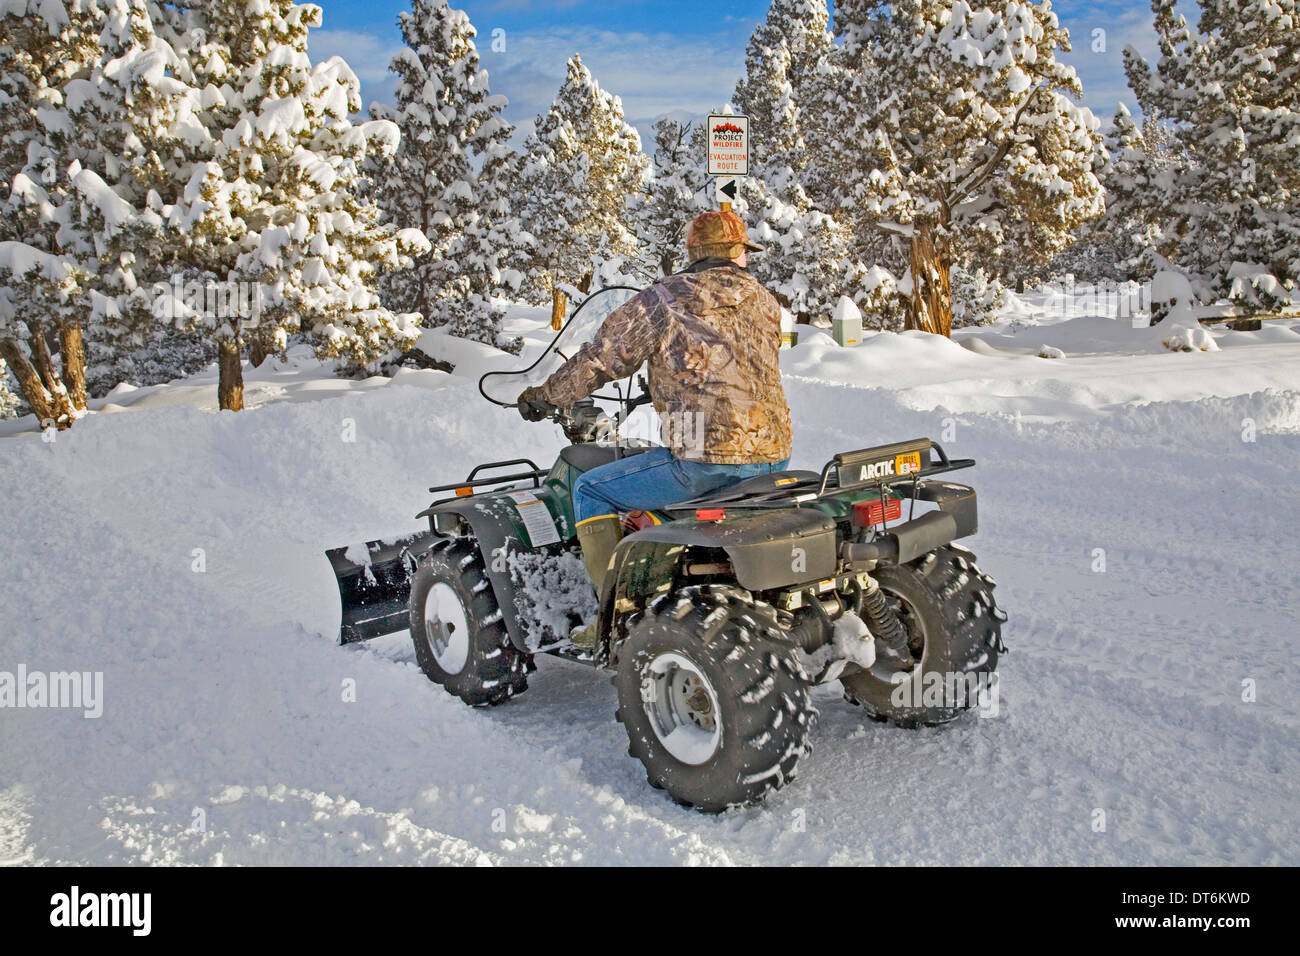 Una persona de la tercera edad los arados de nieve con un ATV, vehículo todo terreno, después de una gran tormenta de nieve en el centro de Oregon. Foto de stock